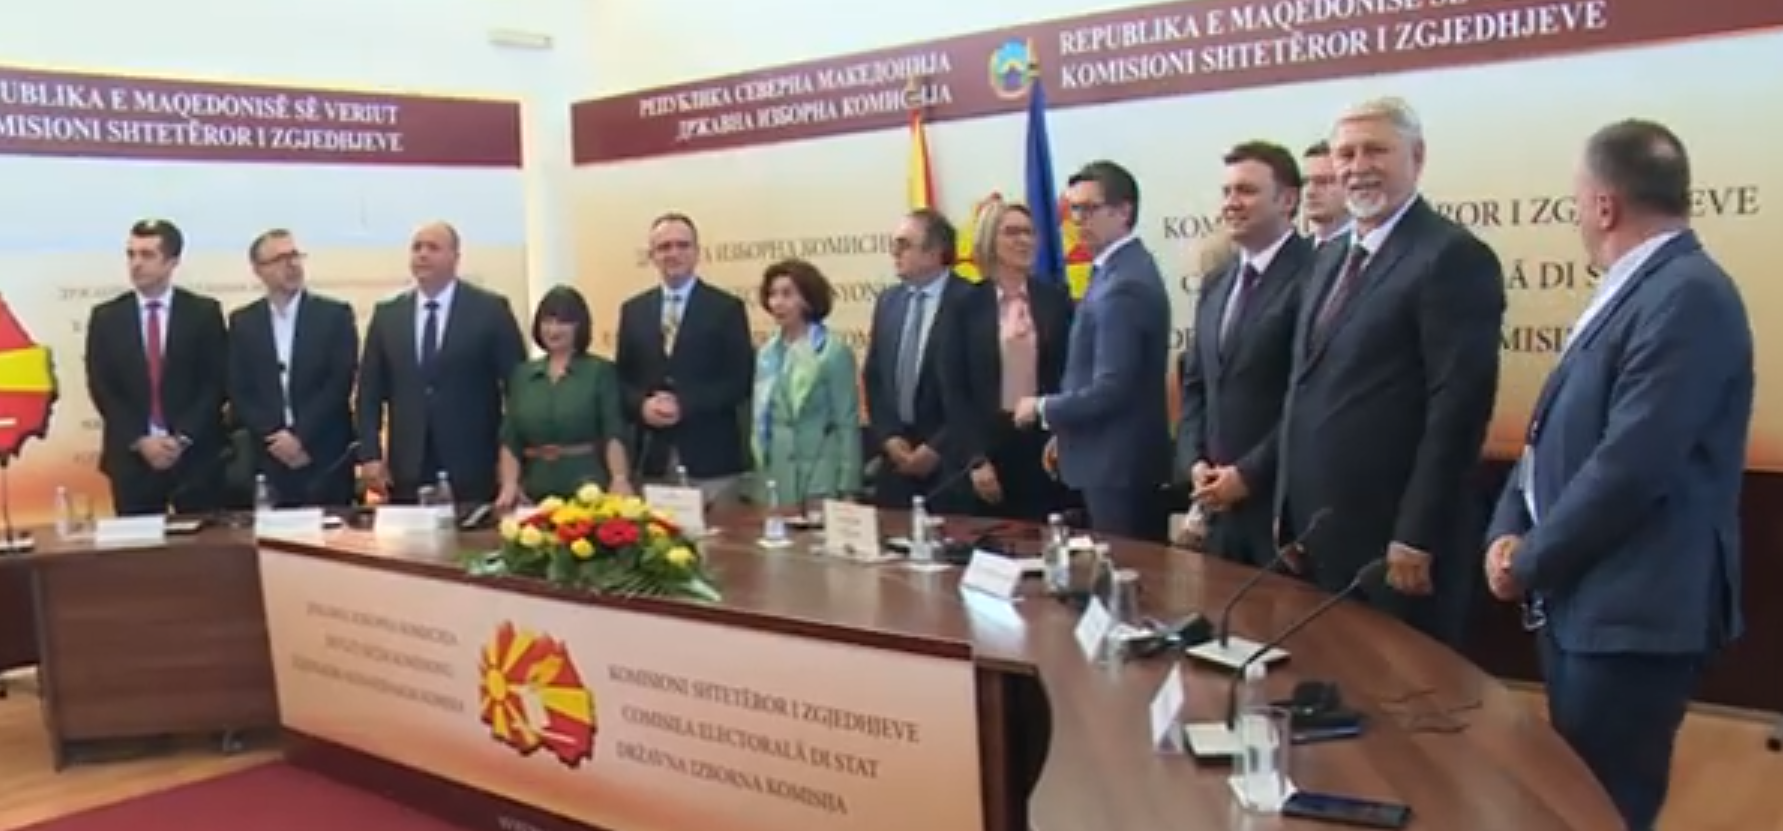 Седум кандидати за претседател, шест потписи на Кодексот за фер избори – Јакимовски не се потпиша